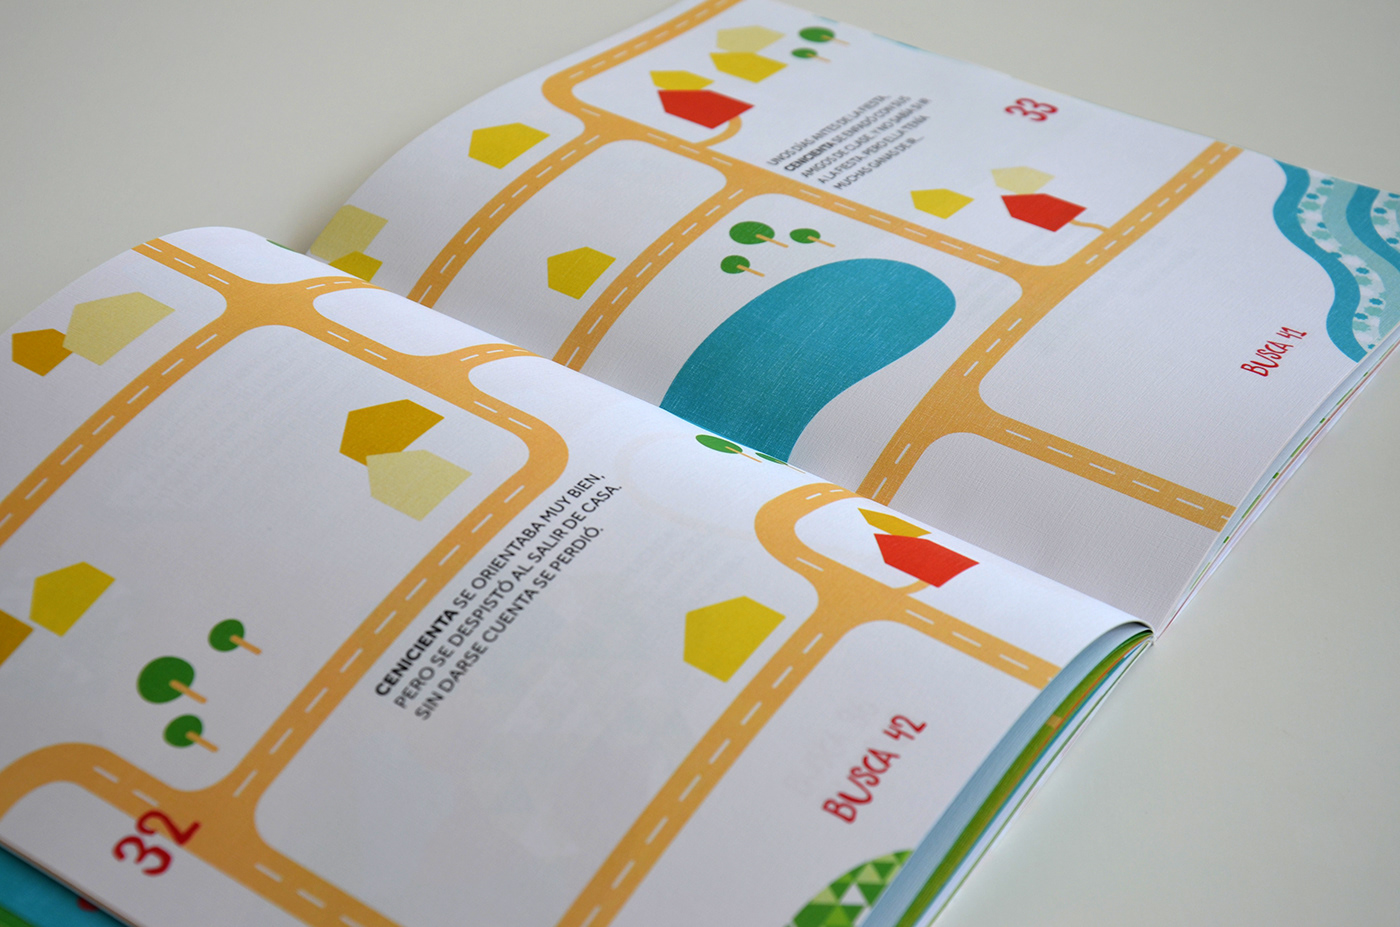 cenicienta ilustracion diseño infantil editorial coeducación feminismo Librojuego diseño gráfico